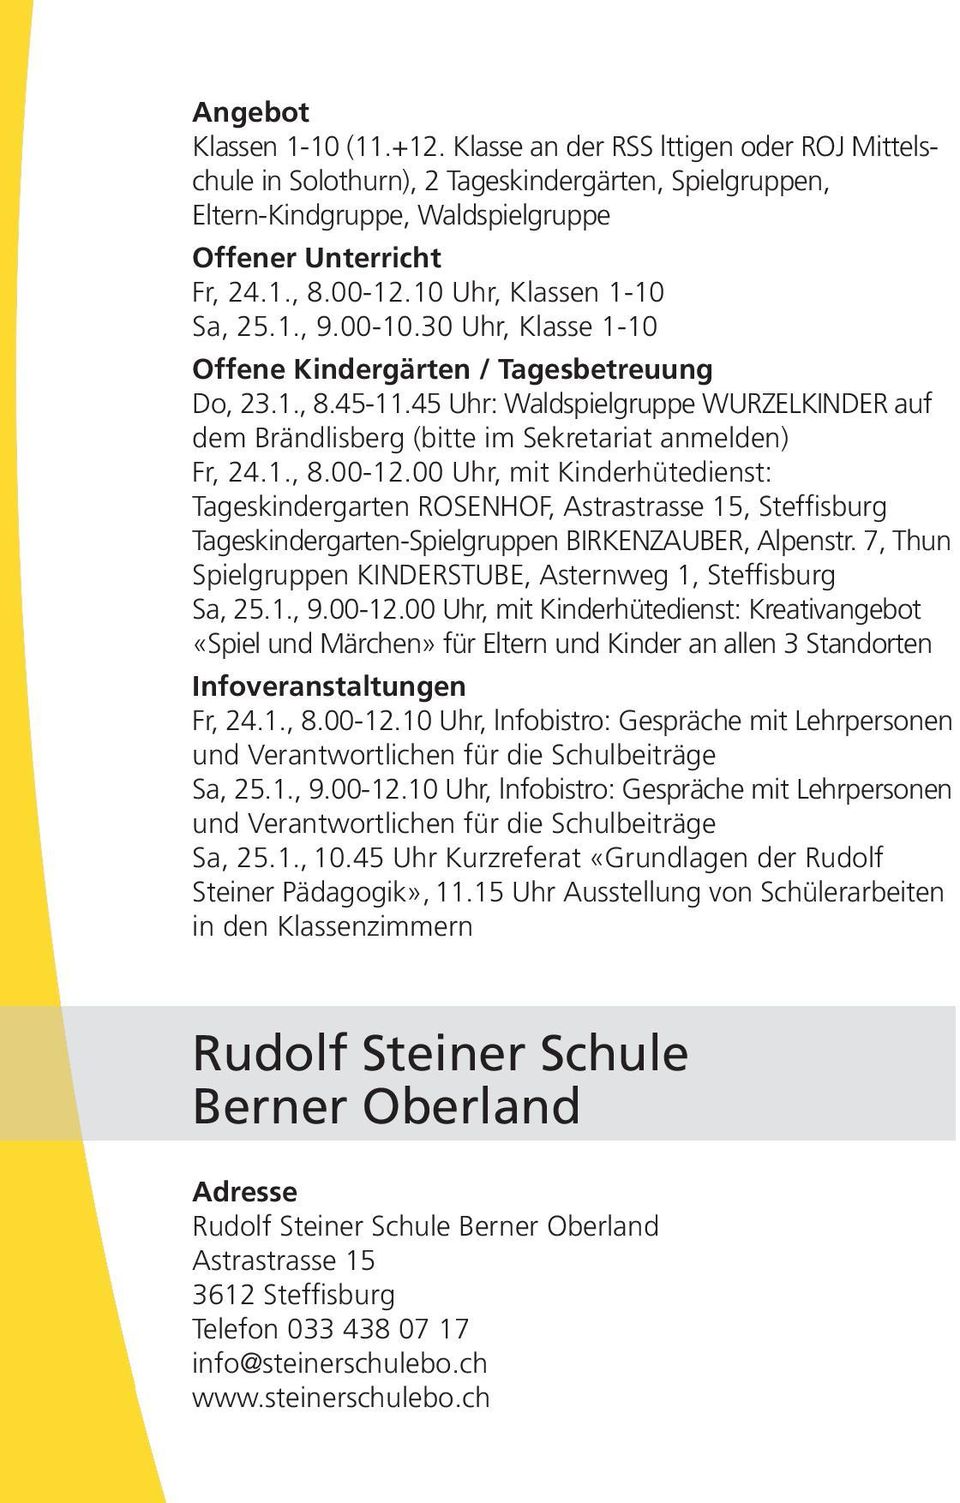 45 Uhr: Waldspielgruppe WURZELKINDER auf dem Brändlisberg (bitte im Sekretariat anmelden) Fr, 24.1., 8.00-12.